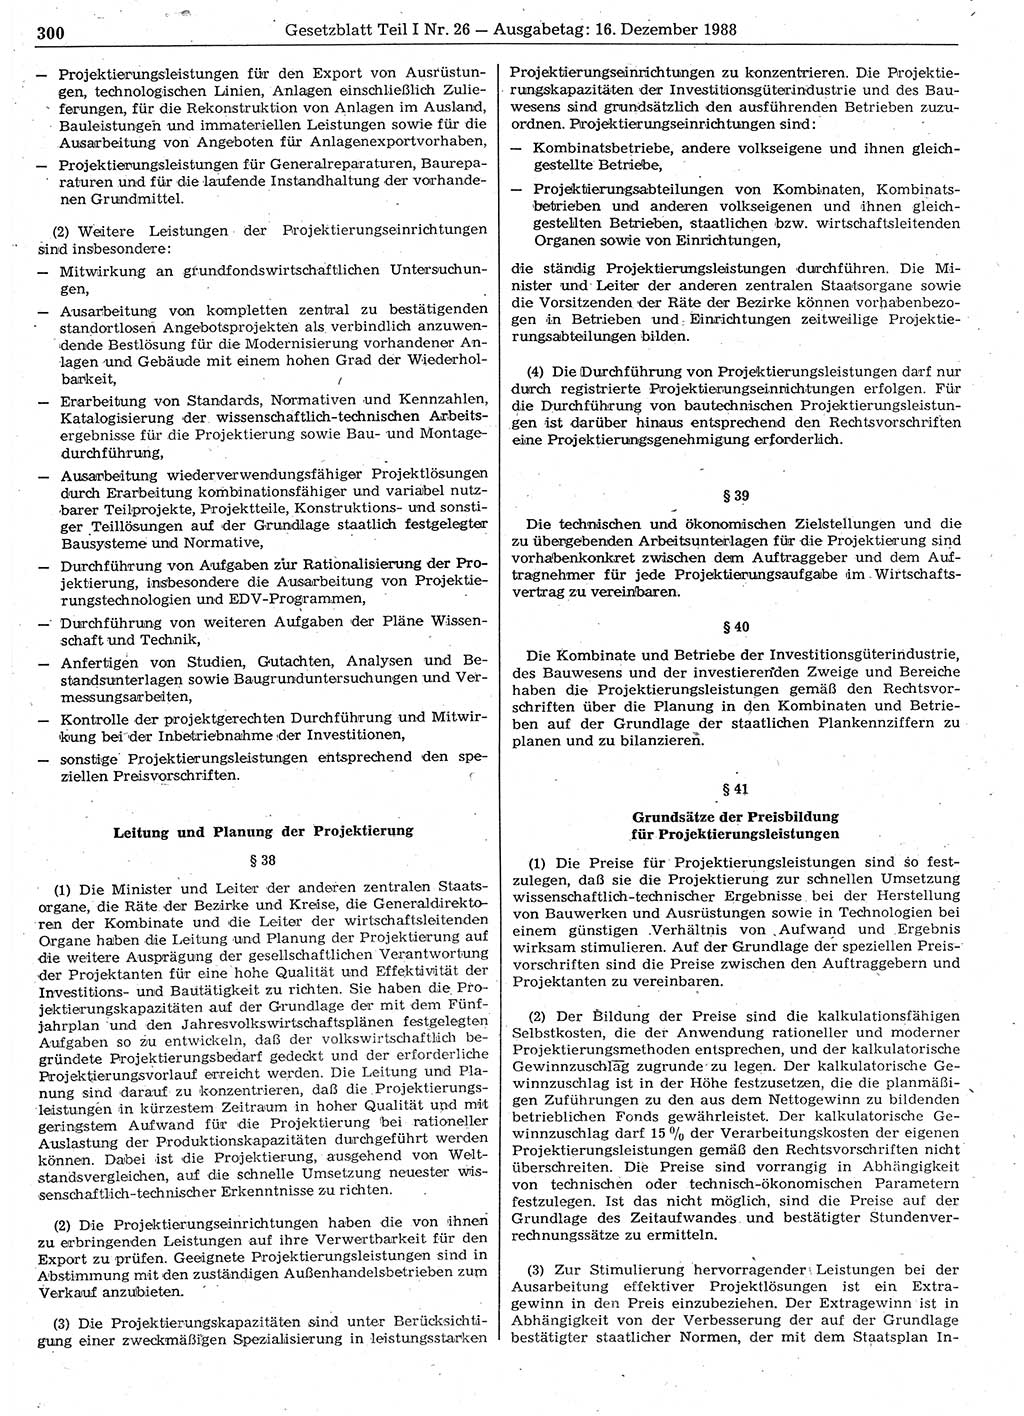 Gesetzblatt (GBl.) der Deutschen Demokratischen Republik (DDR) Teil Ⅰ 1988, Seite 300 (GBl. DDR Ⅰ 1988, S. 300)